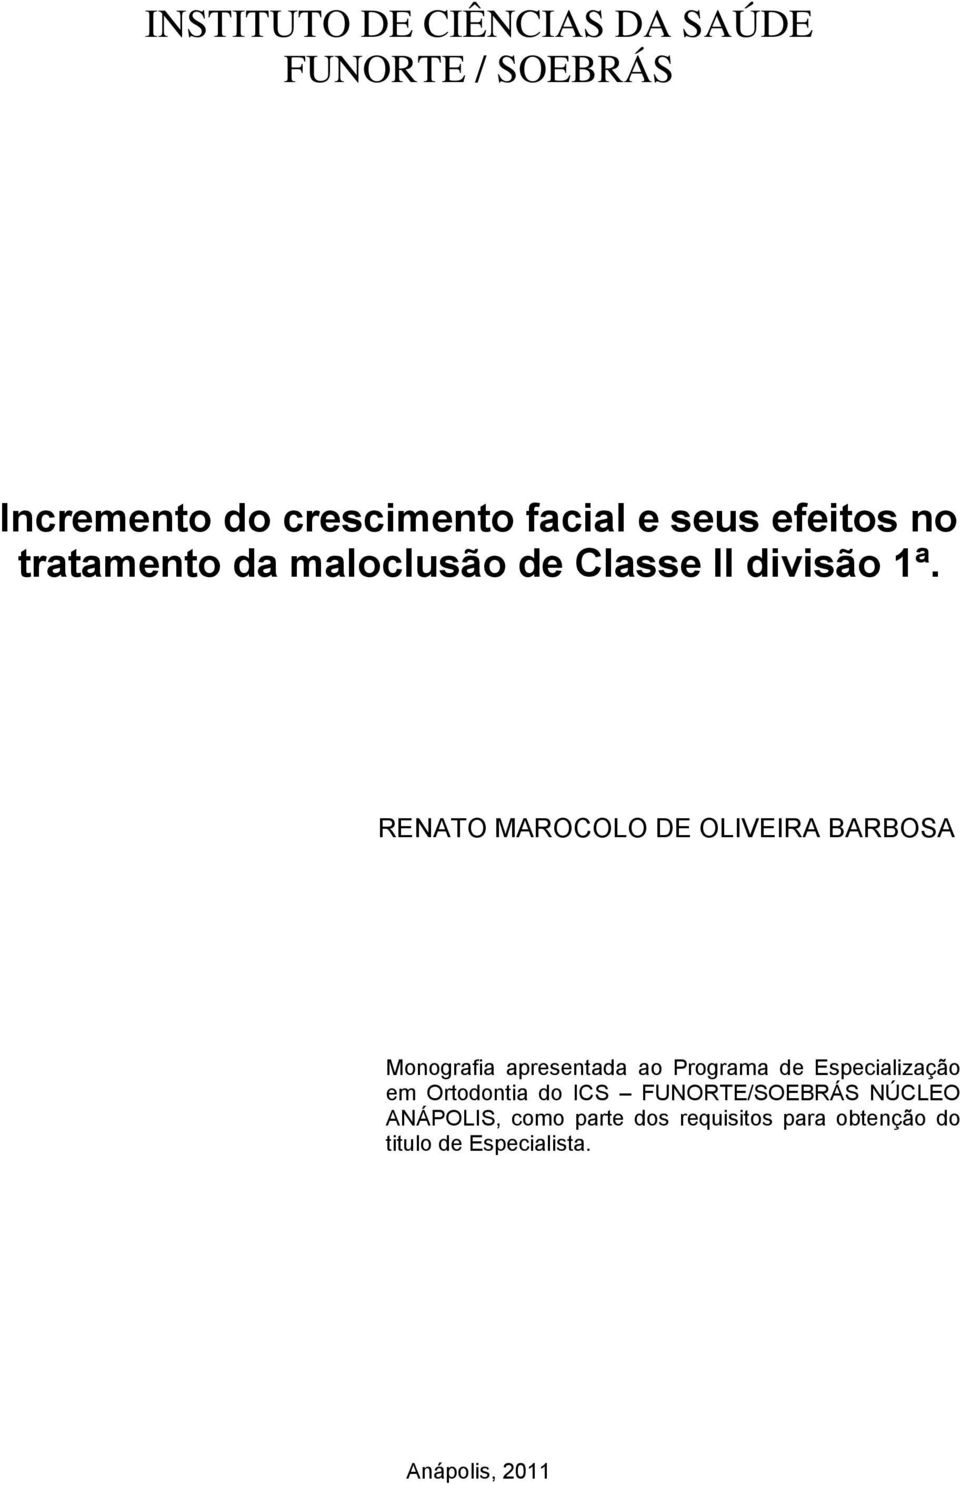 RENATO MAROCOLO DE OLIVEIRA BARBOSA Monografia apresentada ao Programa de Especialização em